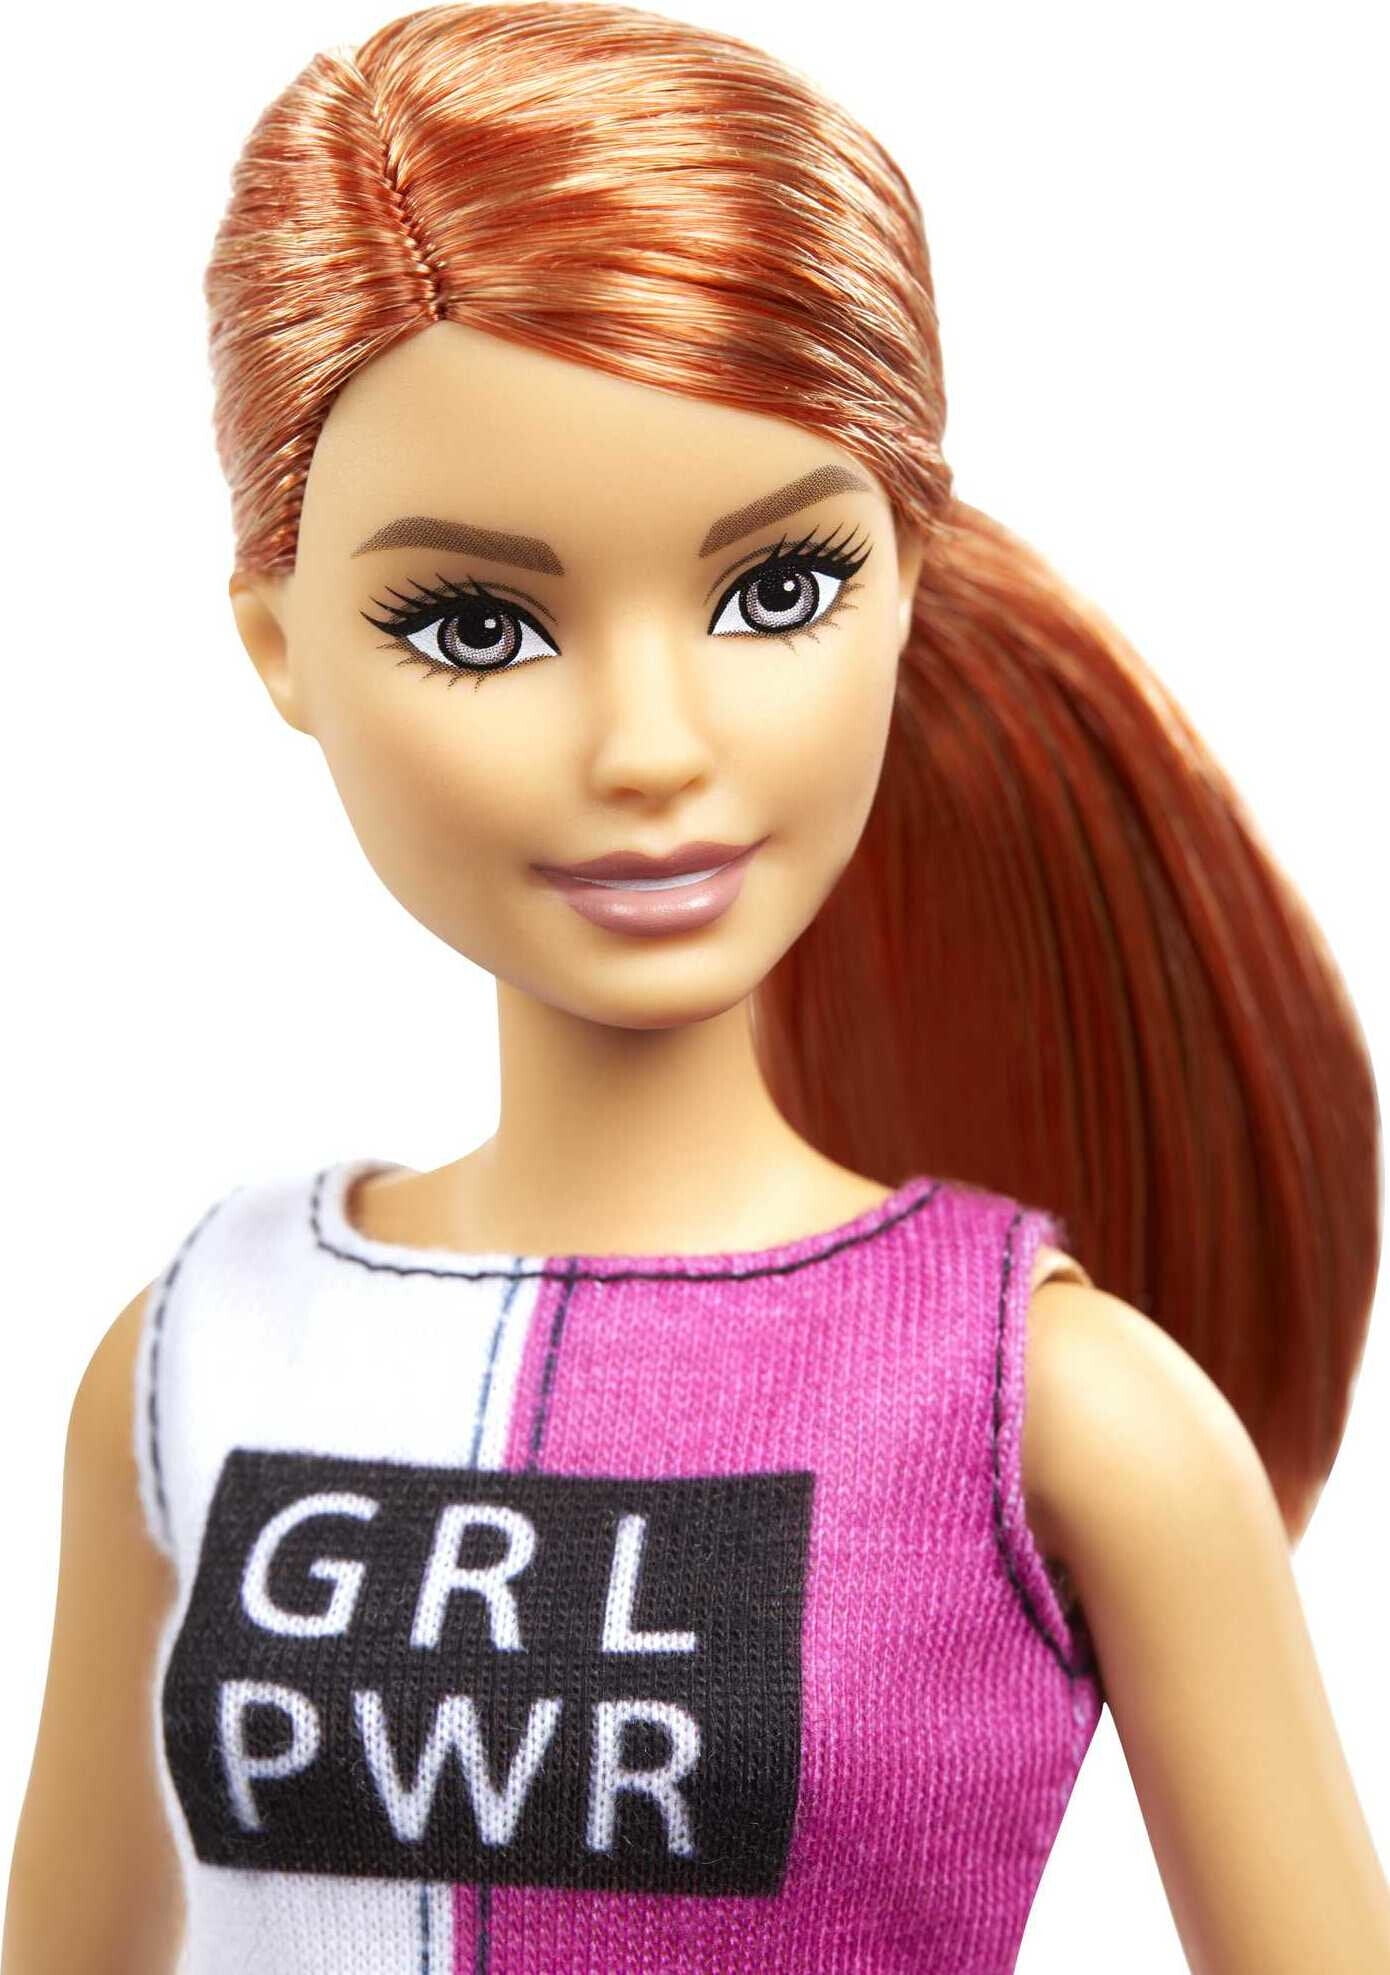 Barbie Istruttrice di Ginnastica - Mattel